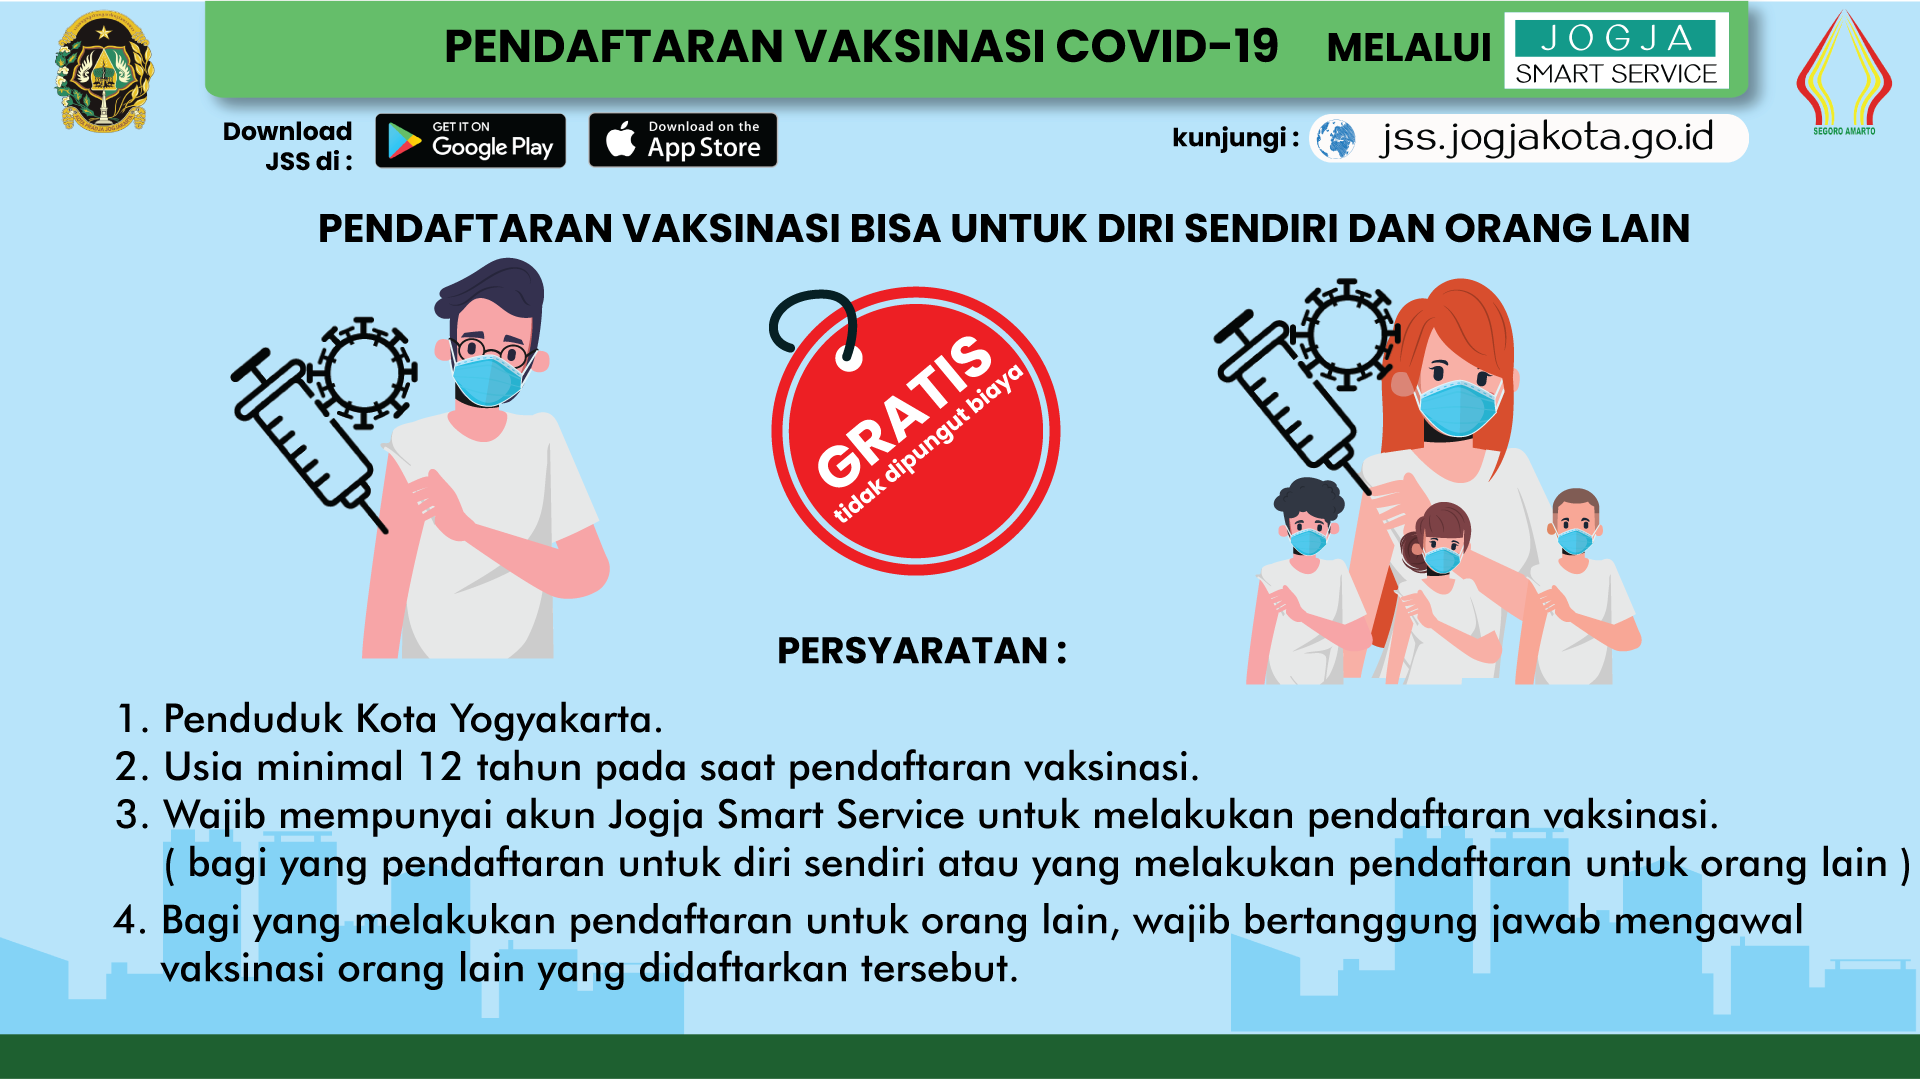 Pendaftaran Vaksinasi Covid-19 untuk Masyarakat Umum di Kota Yogyakarta